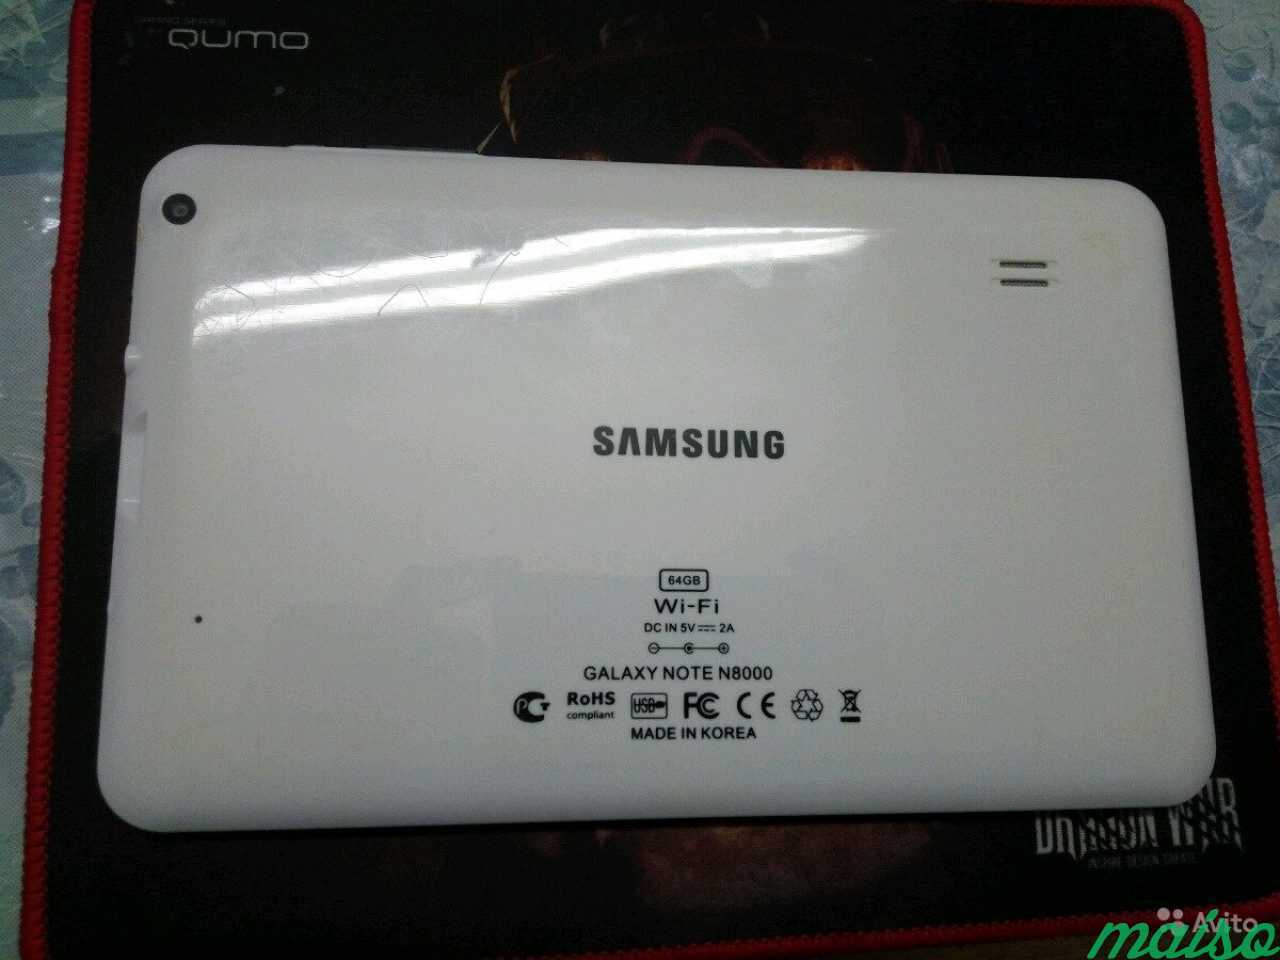 Galaxy note n8000 64gb. Китайский Samsung Note n8000. Samsung Note 8000 китайский планшет. Планшет Samsung Galaxy Note n8000 64gb.